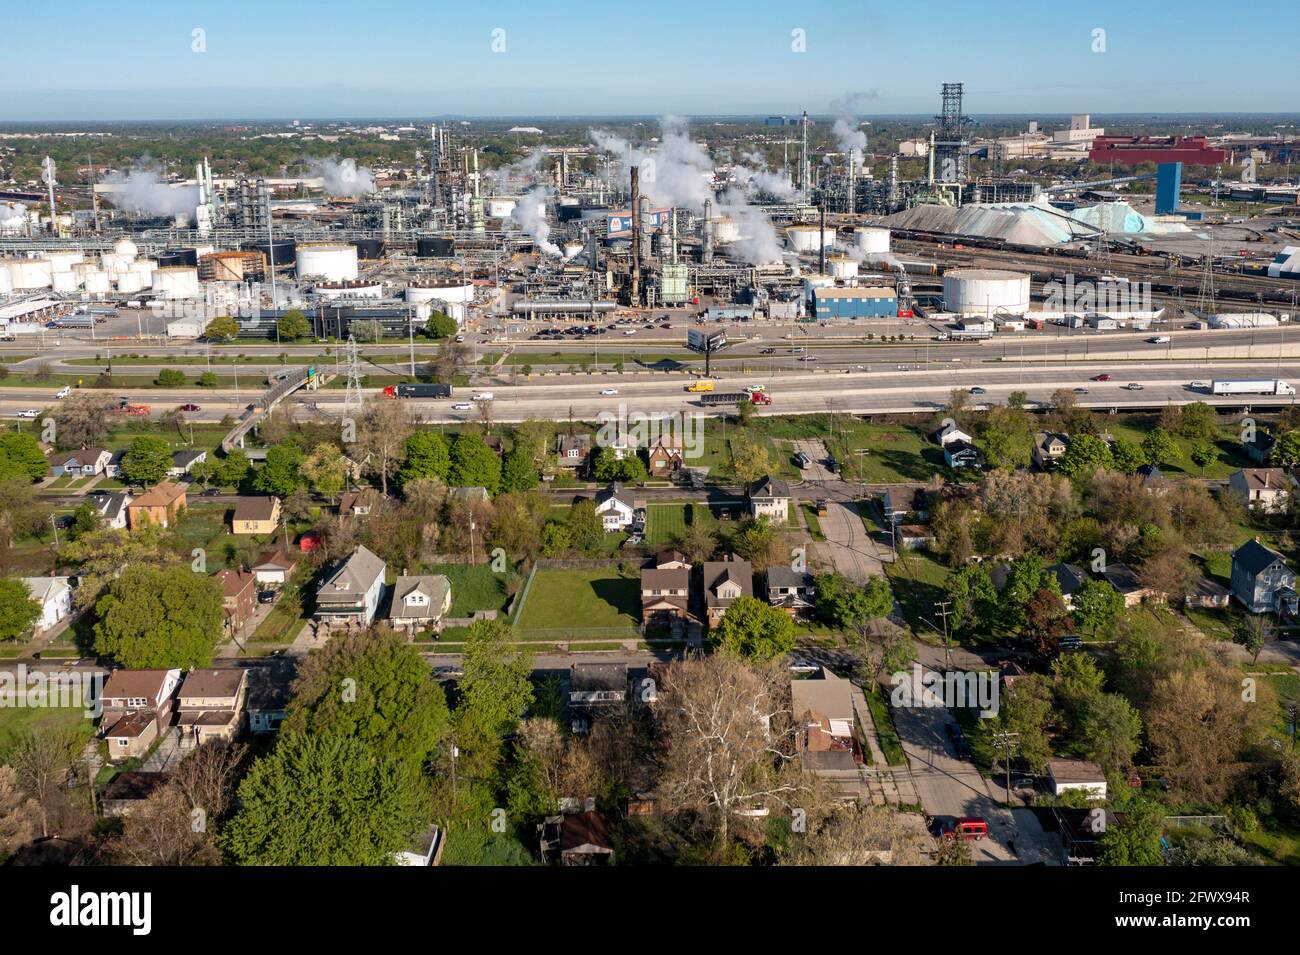 Detroit, Michigan - un quartiere a basso reddito vicino alla raffineria Marathon Petroleum nel sud-ovest di Detroit. L'area--codice postale 48217--è la più inquinata Foto Stock